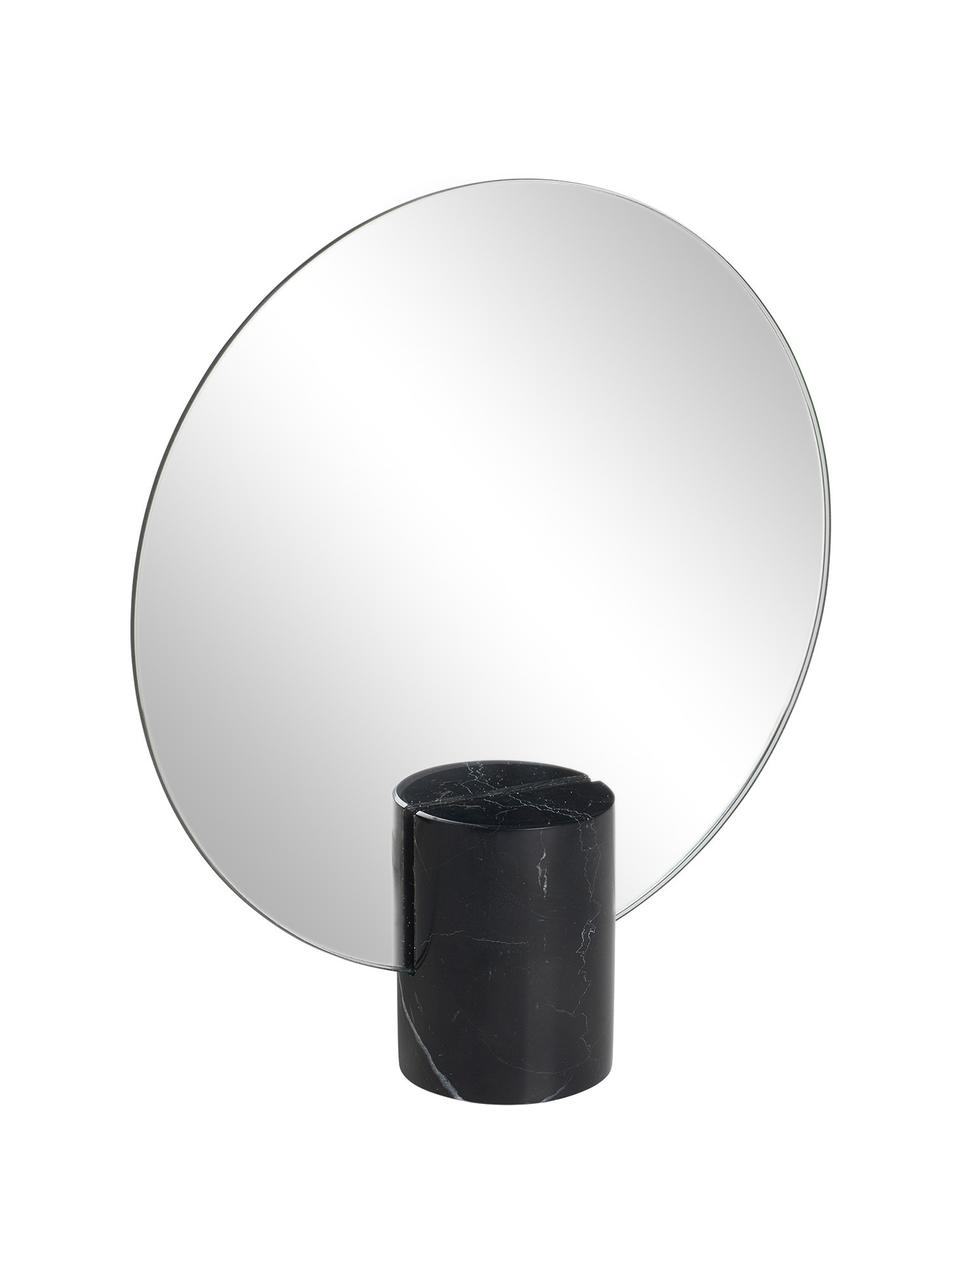 Rahmenloser Kosmetikspiegel Pesa, Spiegelfläche: Spiegelglas, Sockel: Marmor, Schwarz, B 22 x H 25 cm